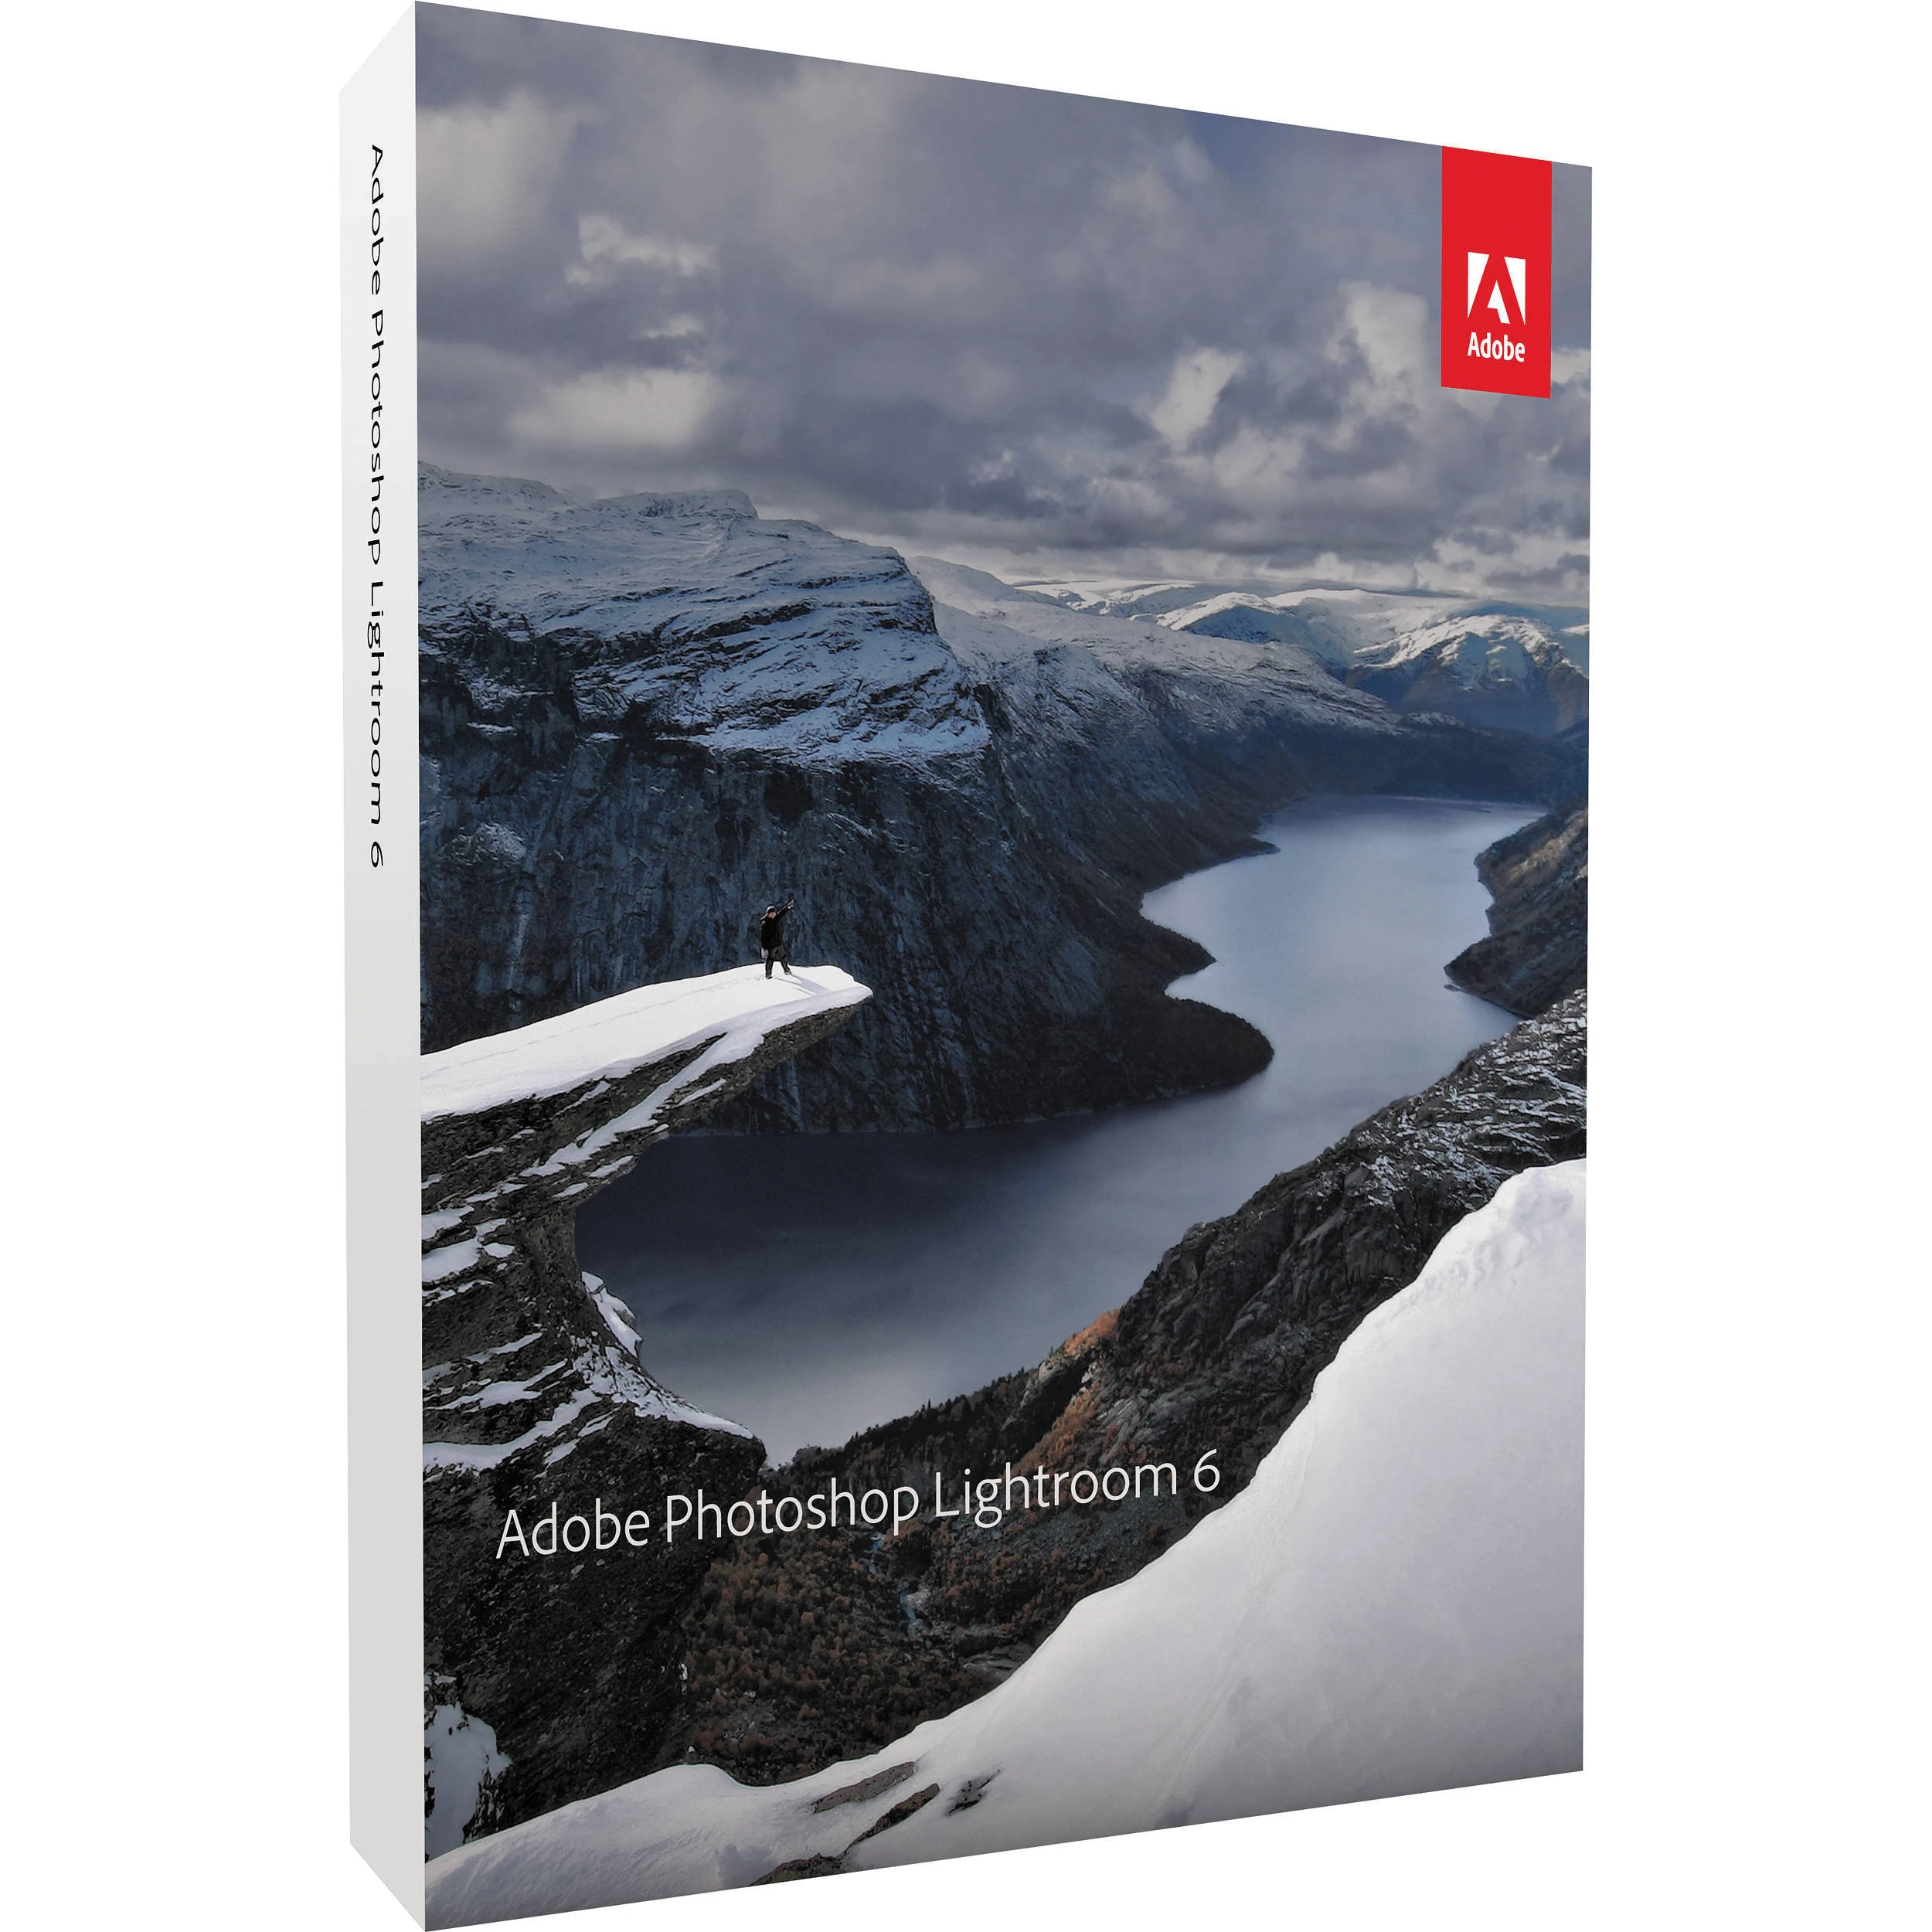 Download Adobe Photoshop Lightroom 6 Full Version